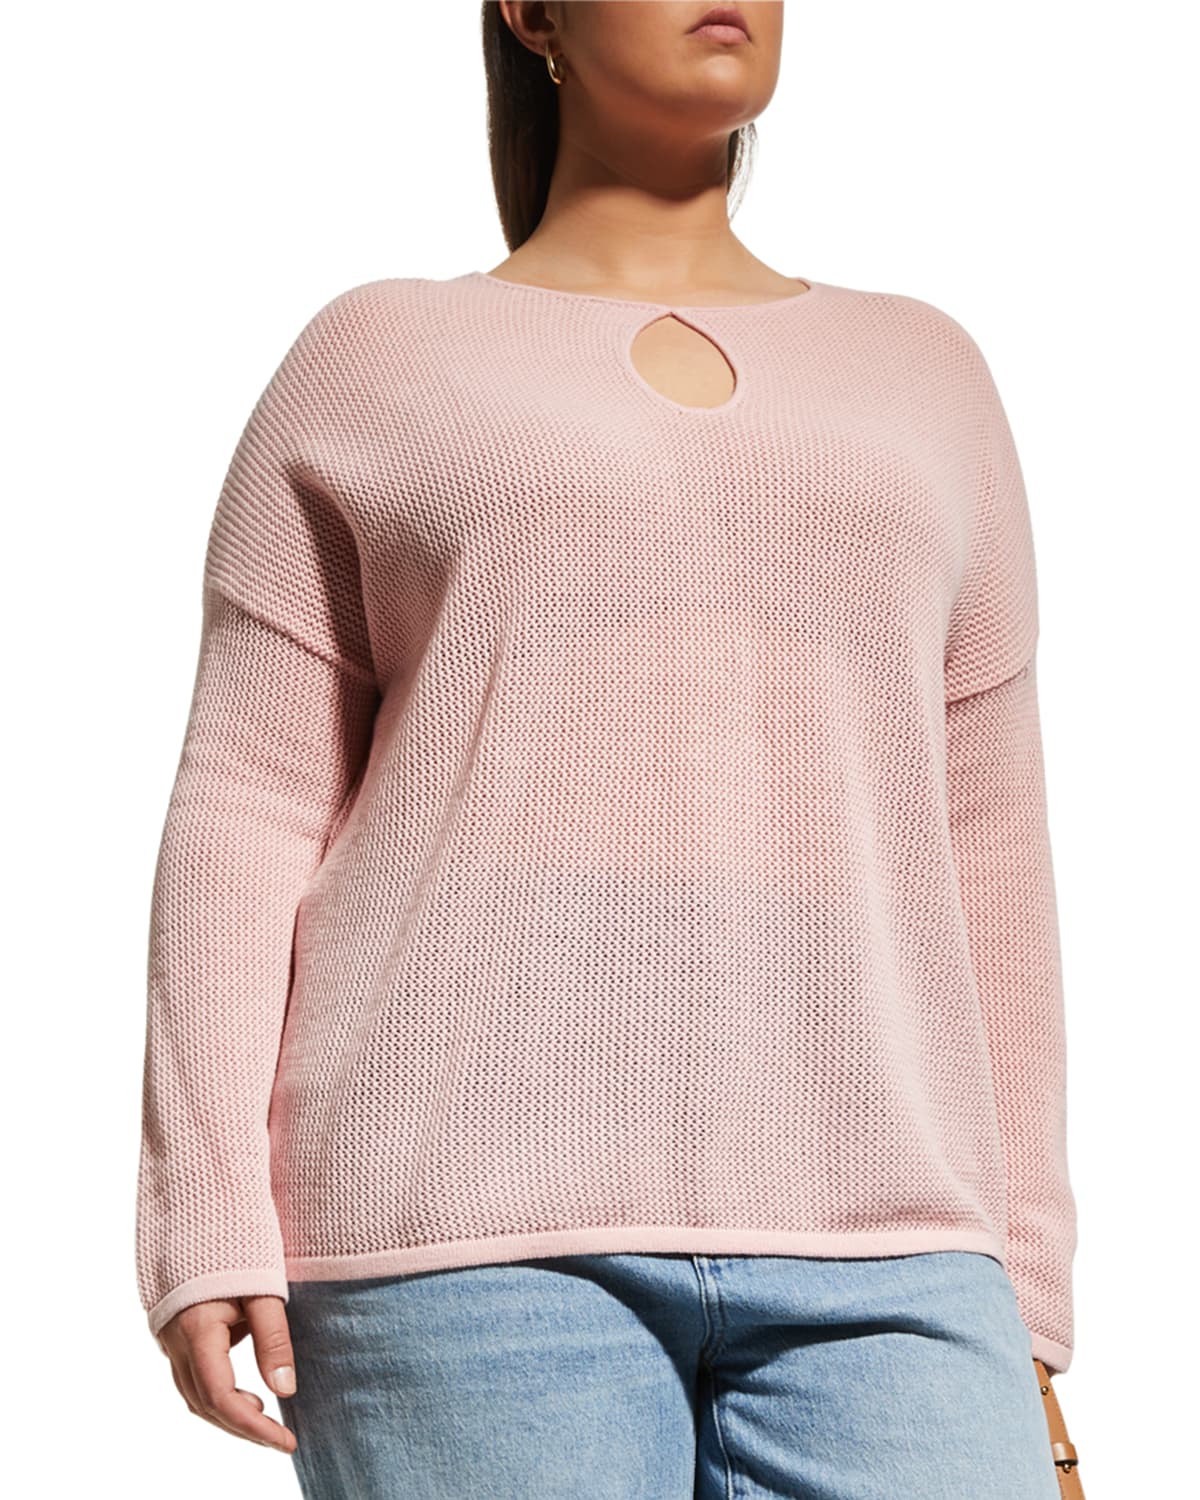 Minnie Rose Plus Plus Size Long-Sleeve Mesh Cotton/Cashmere Top